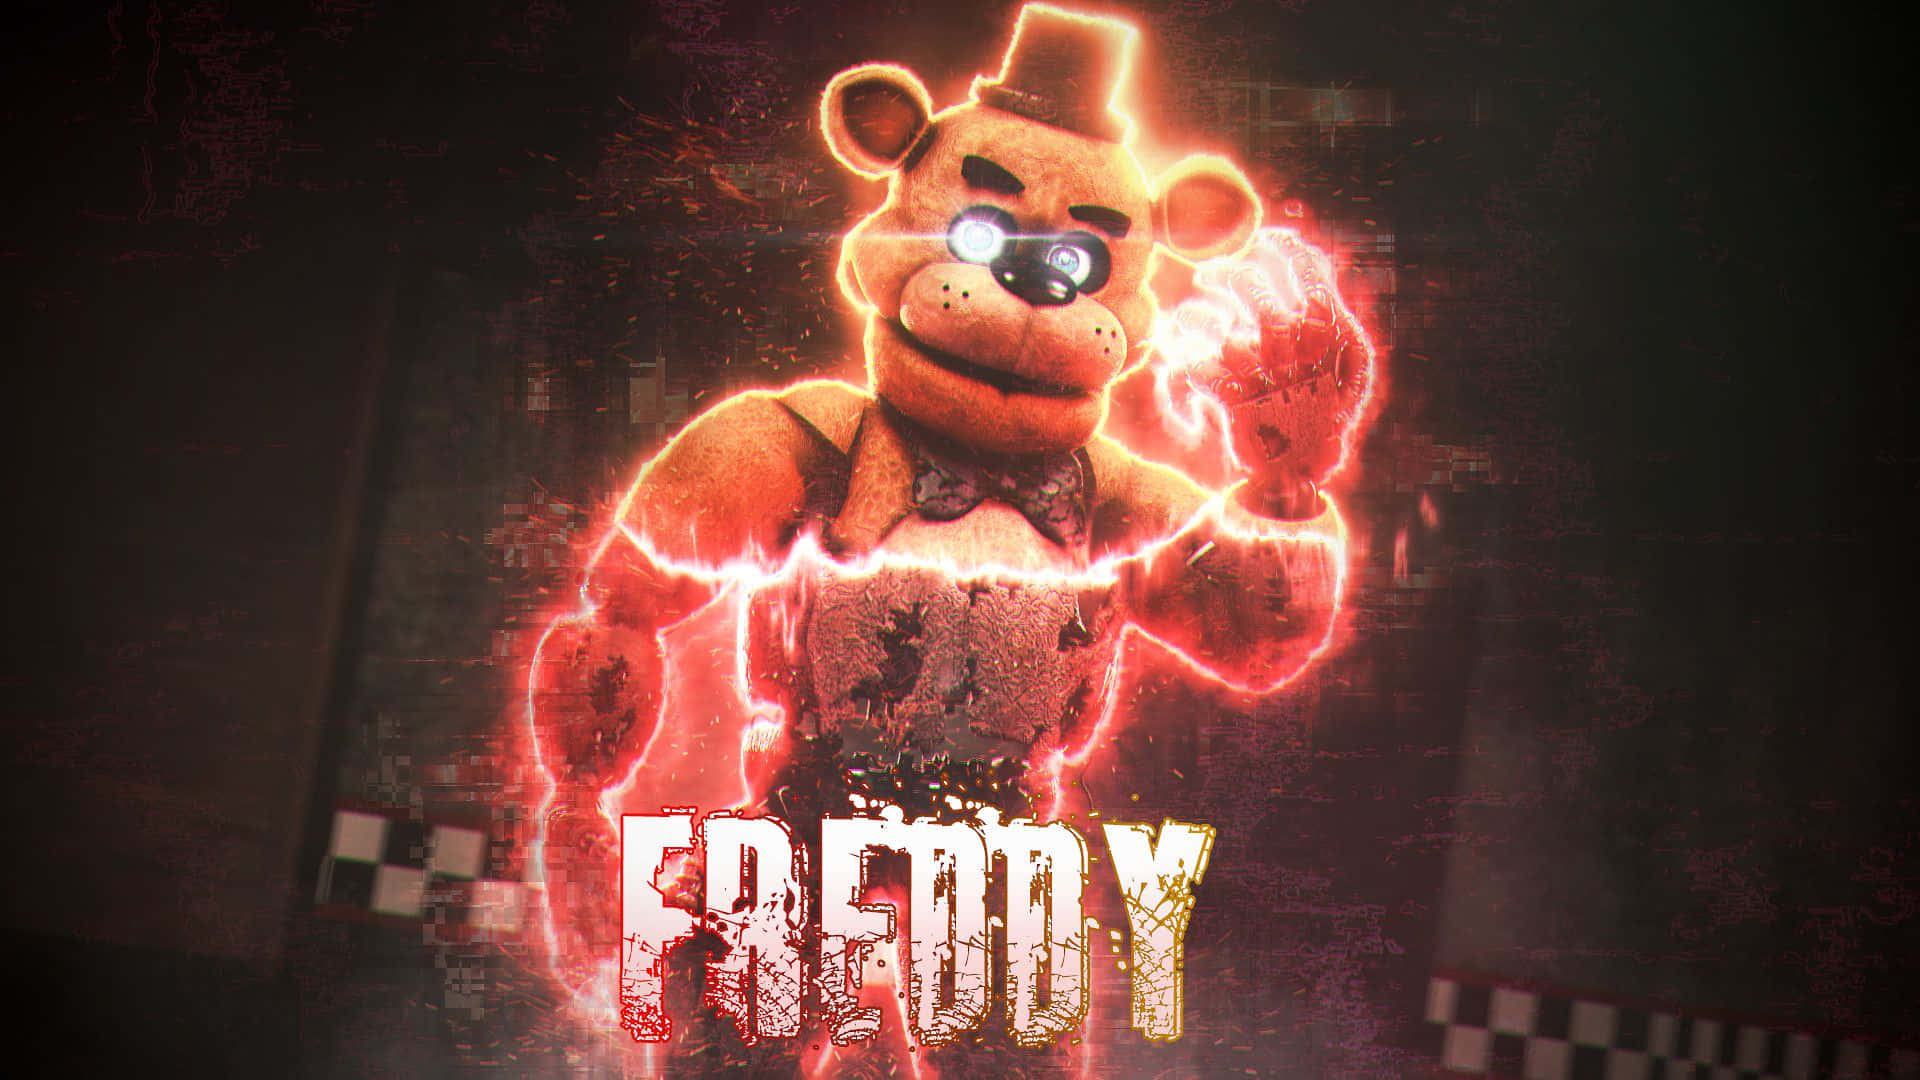 Imágenesde Freddy